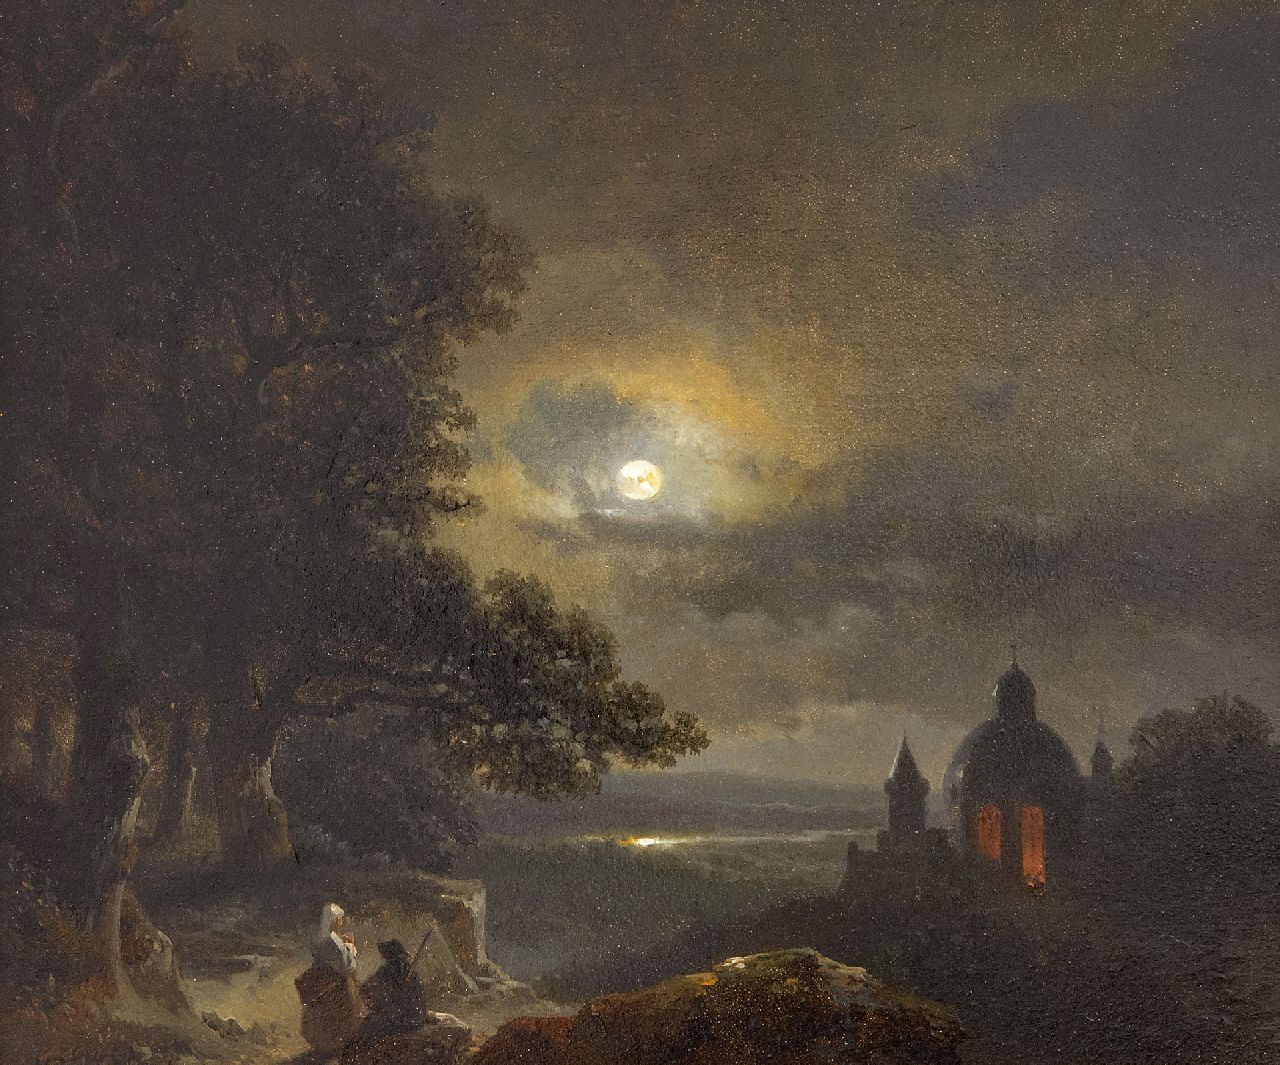 Kuhnen P.L.  | Pierre-Louis Kuhnen | Schilderijen te koop aangeboden | Landvolk uitkijkend over nachtelijke riviervallei, olieverf op paneel 18,1 x 21,3 cm, gesigneerd linksonder